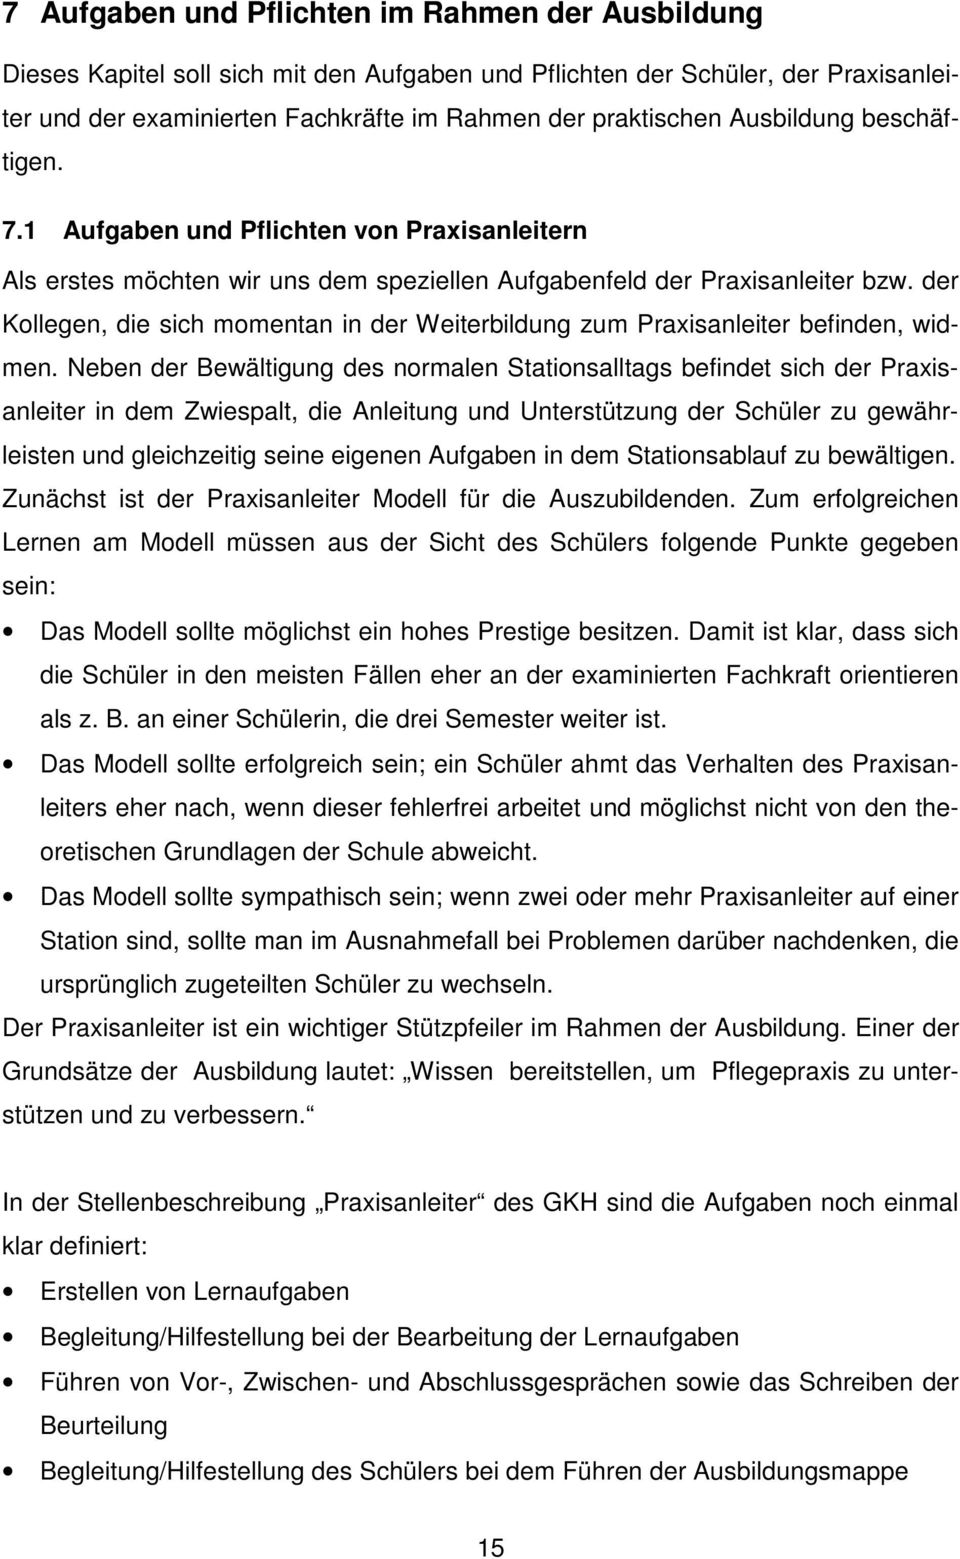 Handbuch Zur Praxisanleitung Pdf Free Download